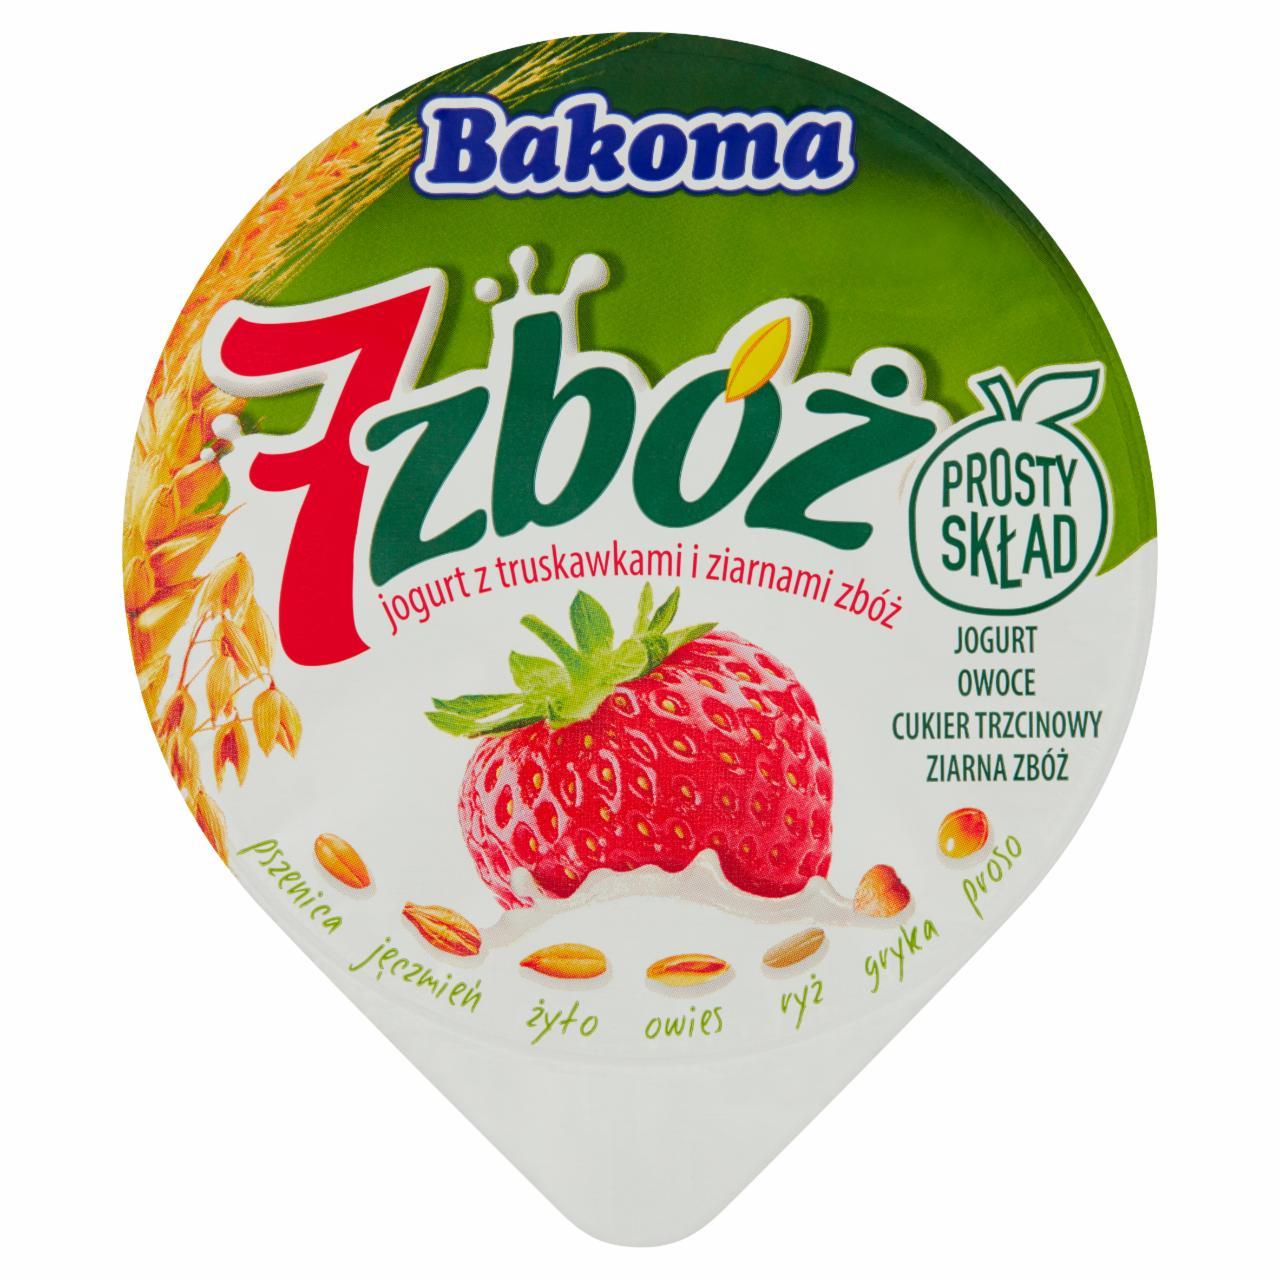 Zdjęcia - 7 zbóż jogurt z truskawkami i ziarnami Bakoma